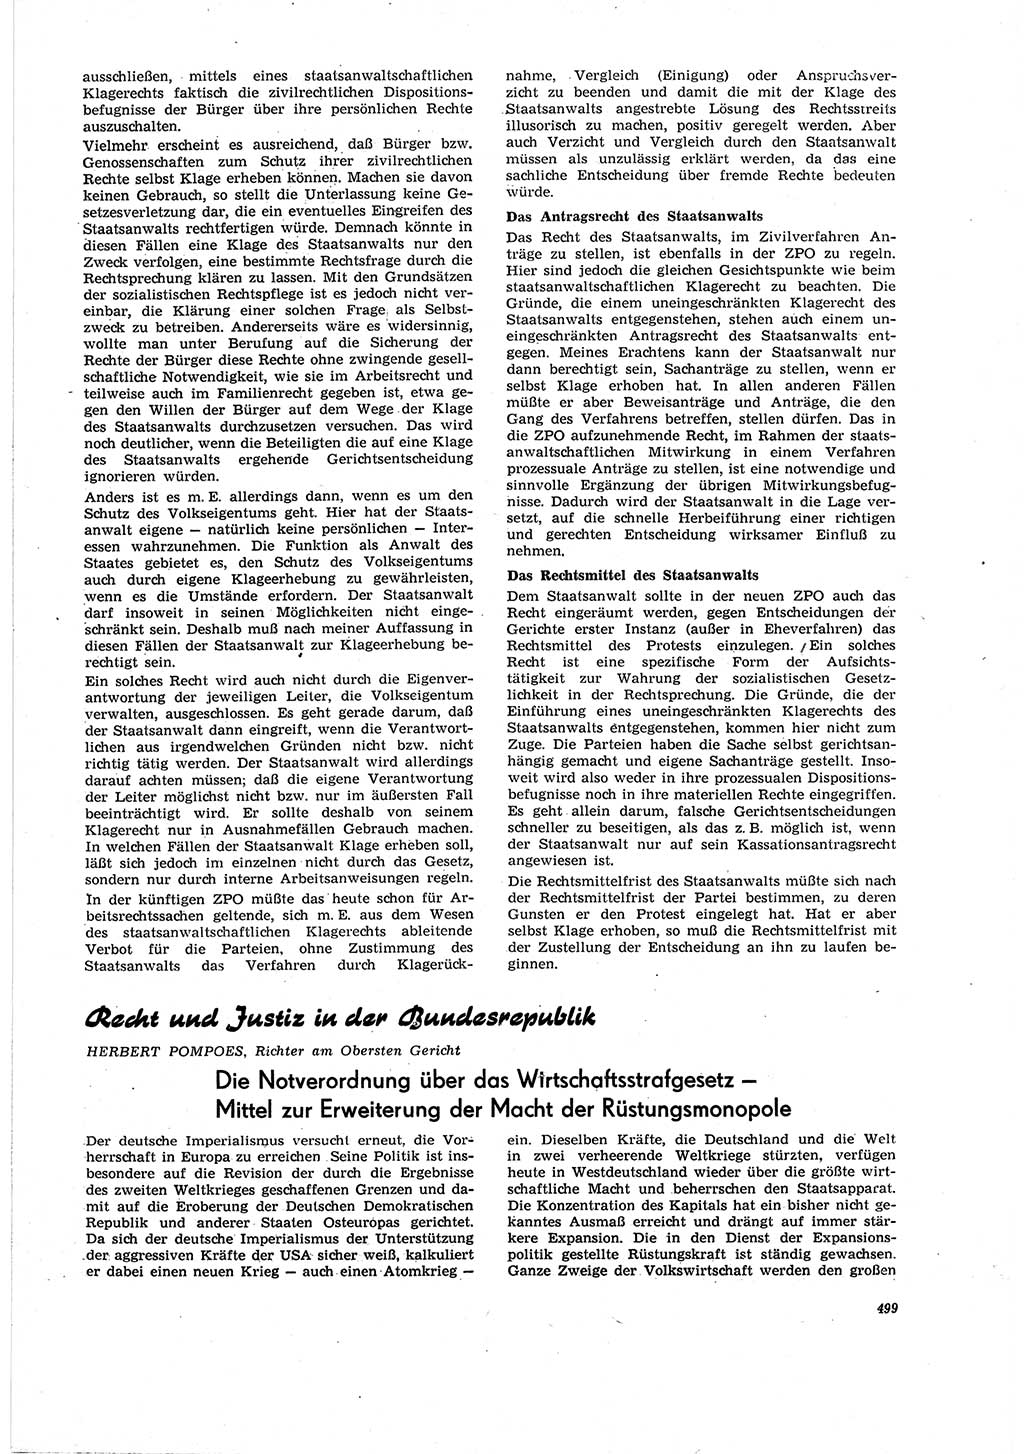 Neue Justiz (NJ), Zeitschrift für Recht und Rechtswissenschaft [Deutsche Demokratische Republik (DDR)], 20. Jahrgang 1966, Seite 499 (NJ DDR 1966, S. 499)